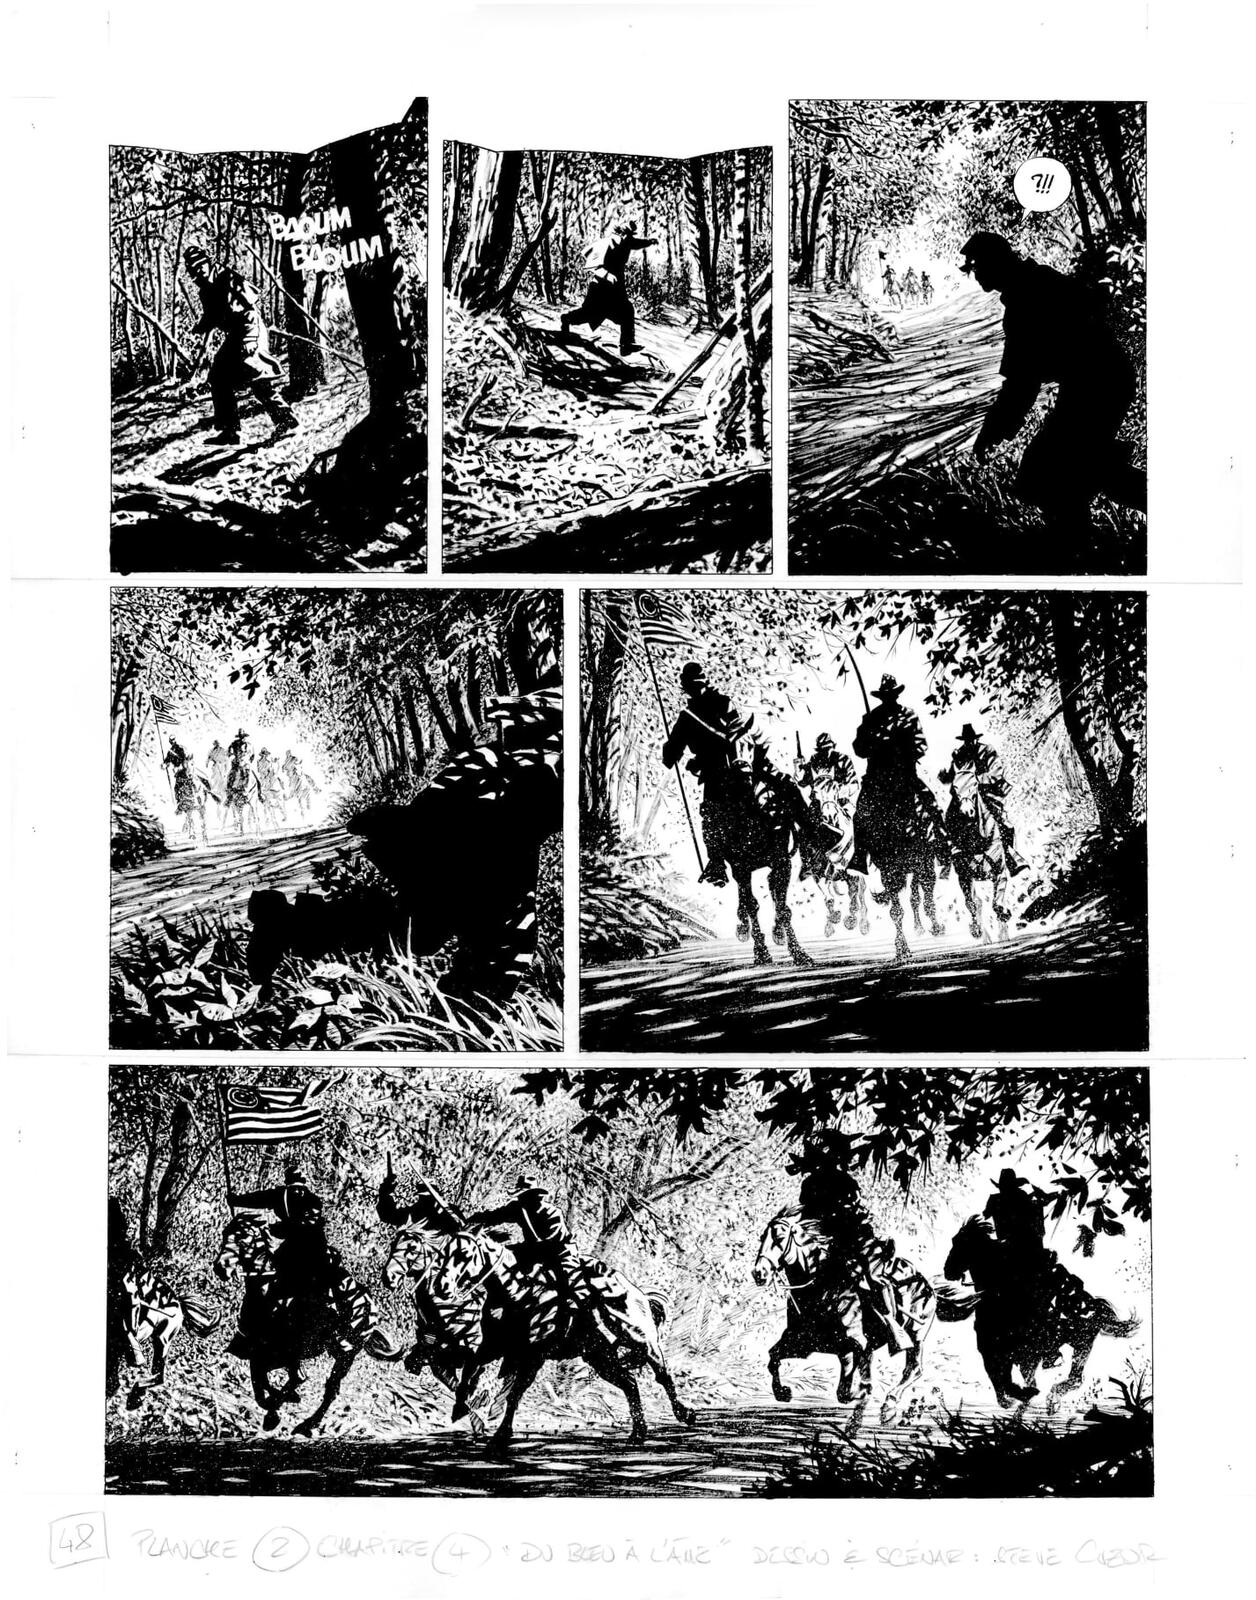 Bande dessinée et littérature - Page 4 Henry-Fleming-4